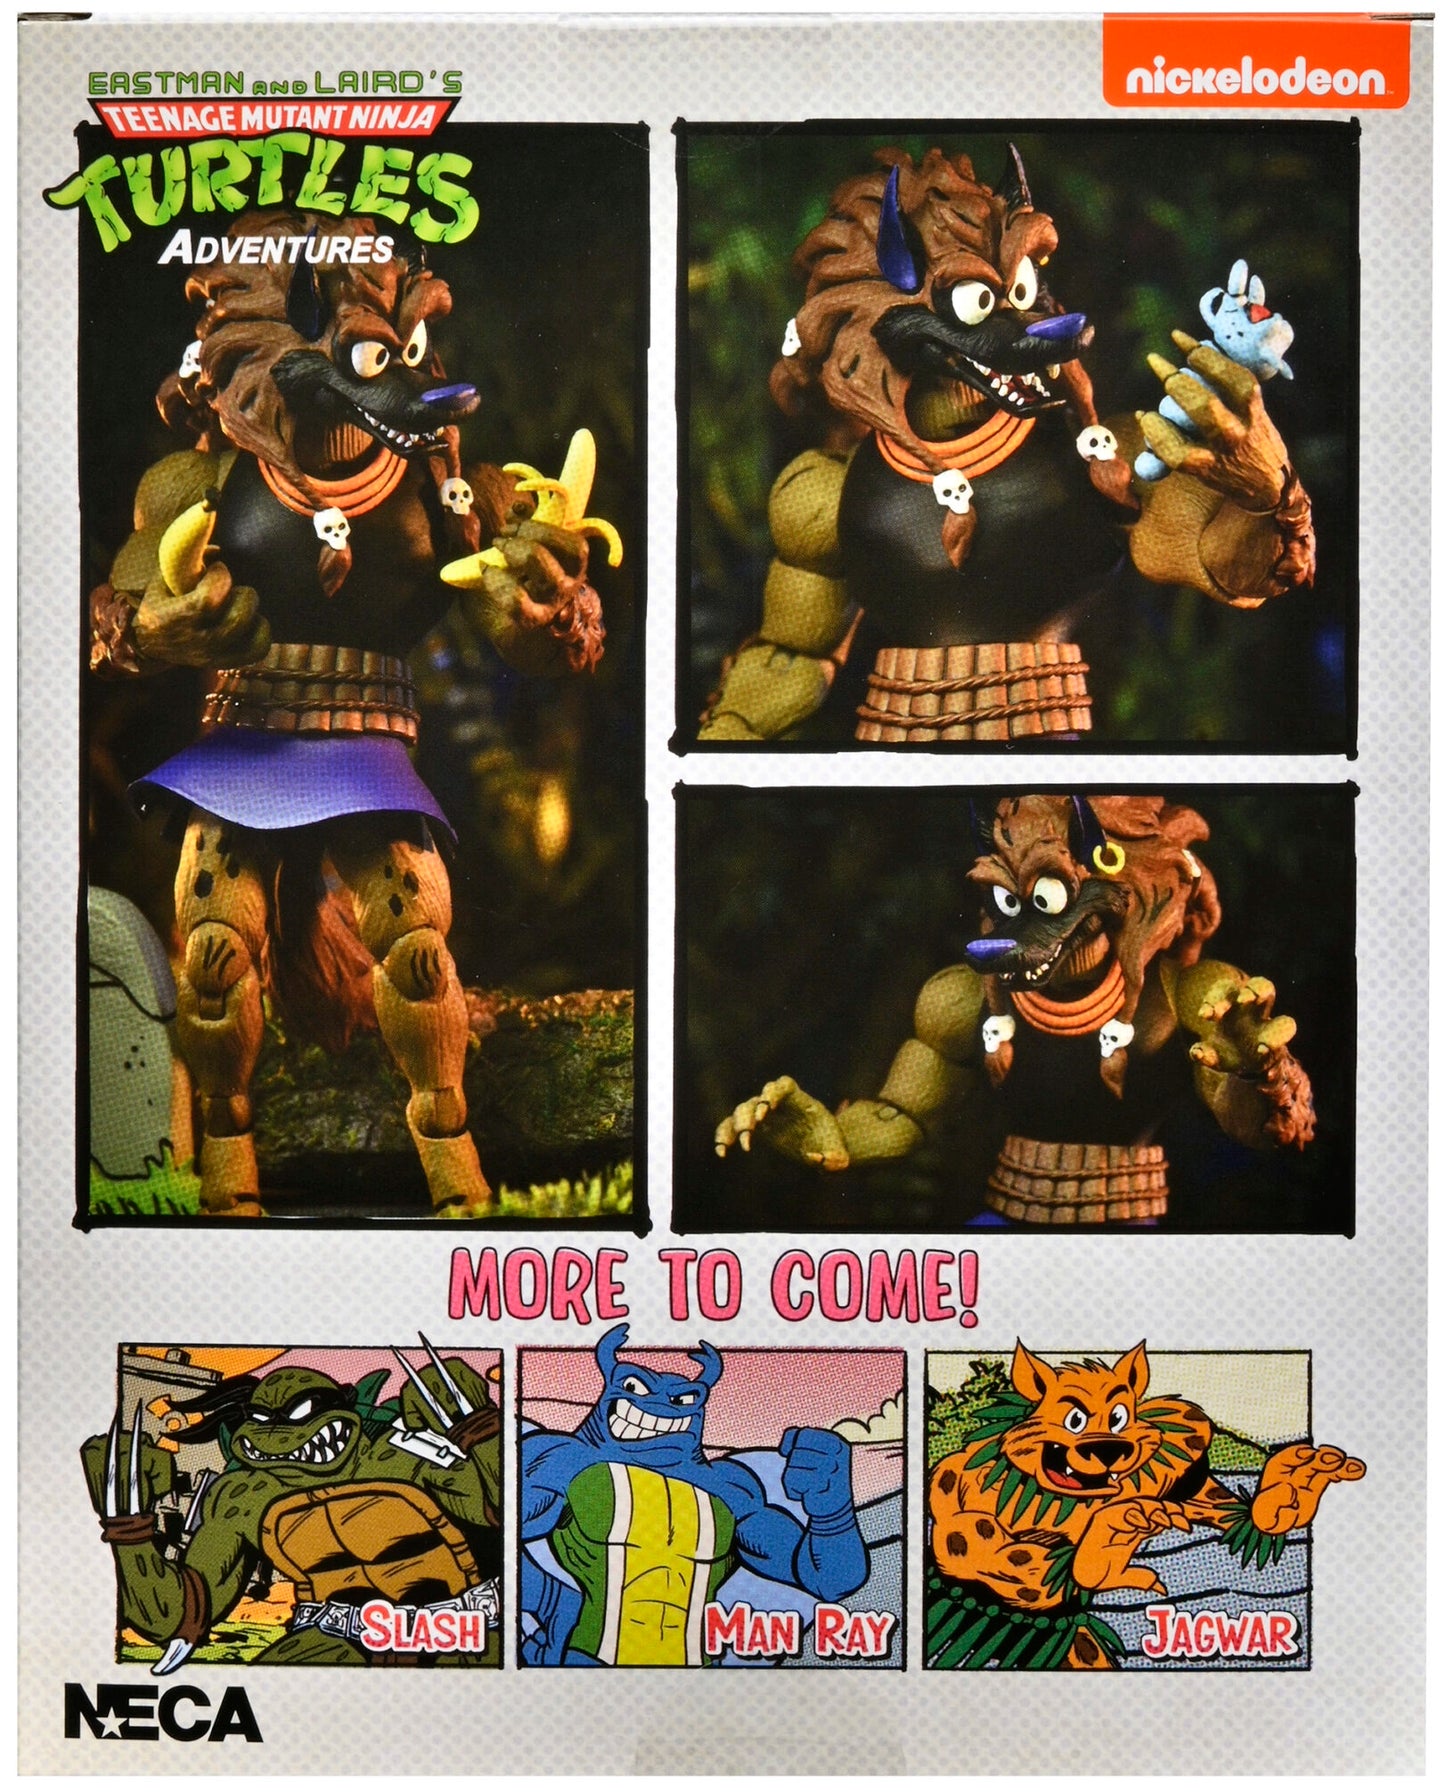 Teenage Mutant Ninja Turtles (Archie Comics) 7” Scale Action Figure – Dreadmon